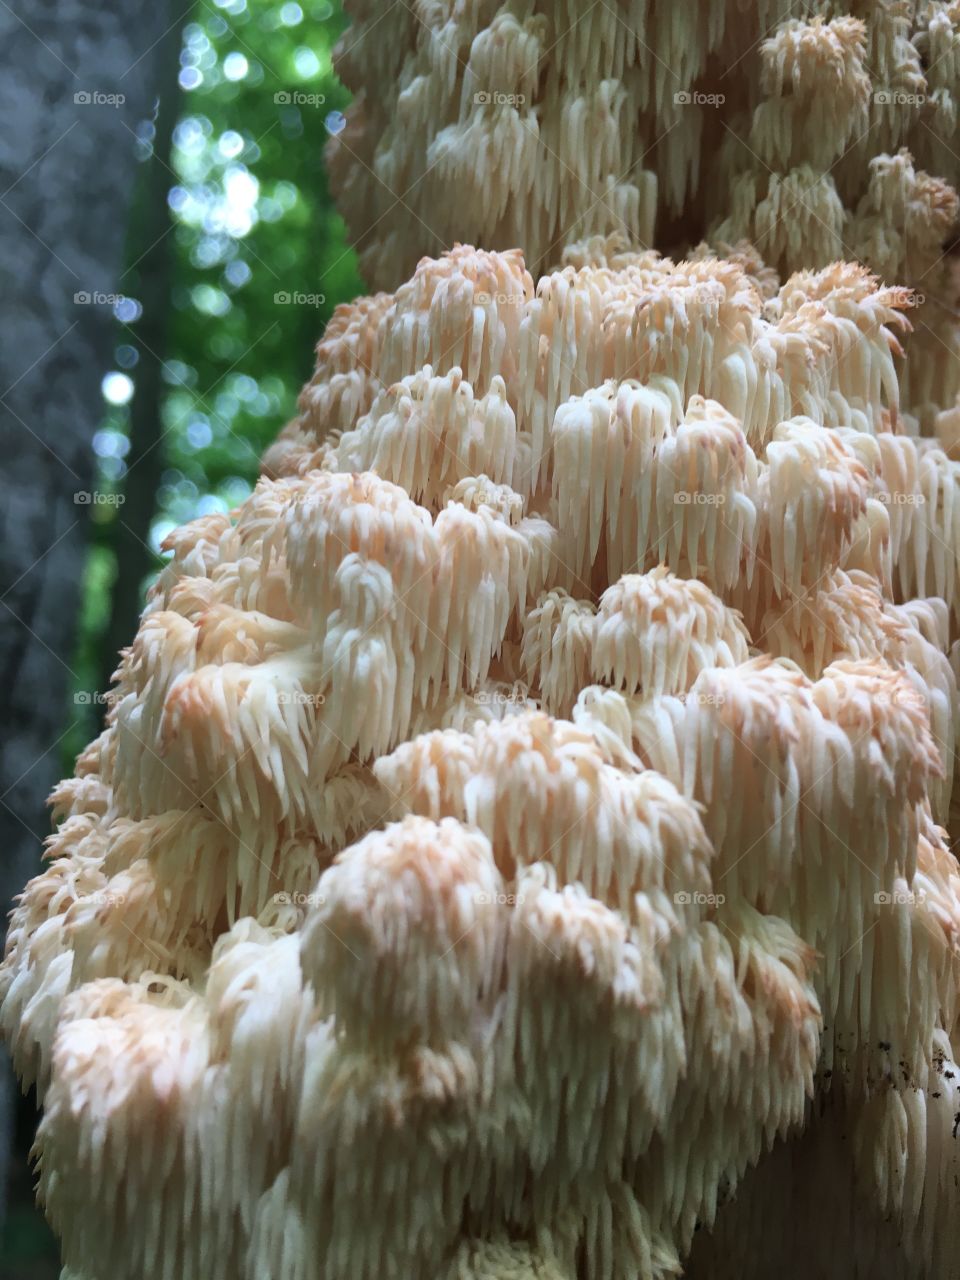 Cool mushroom